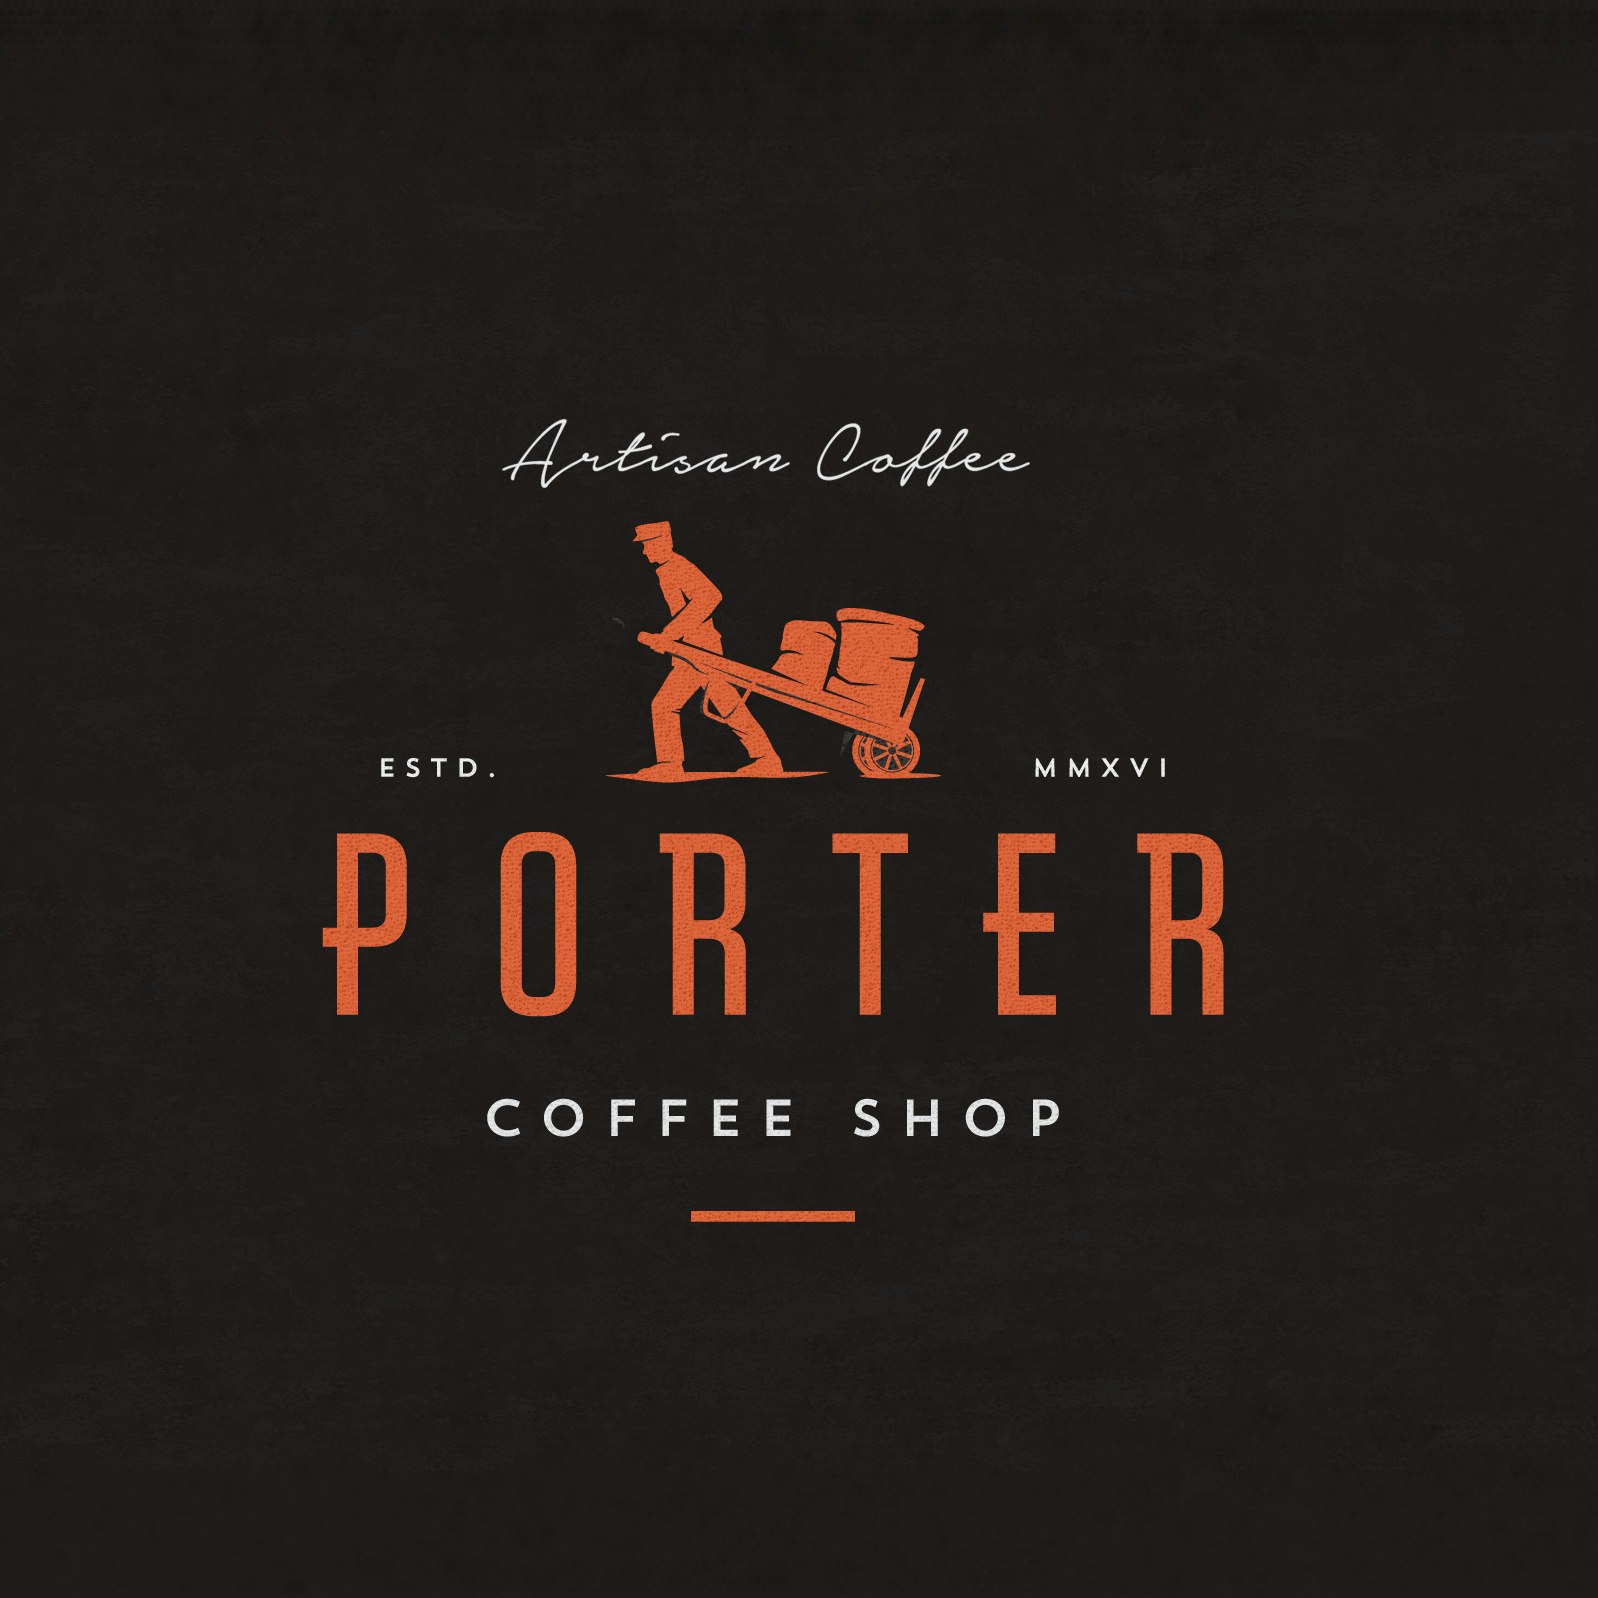 Diseño del logotipo de la cafetería Porter